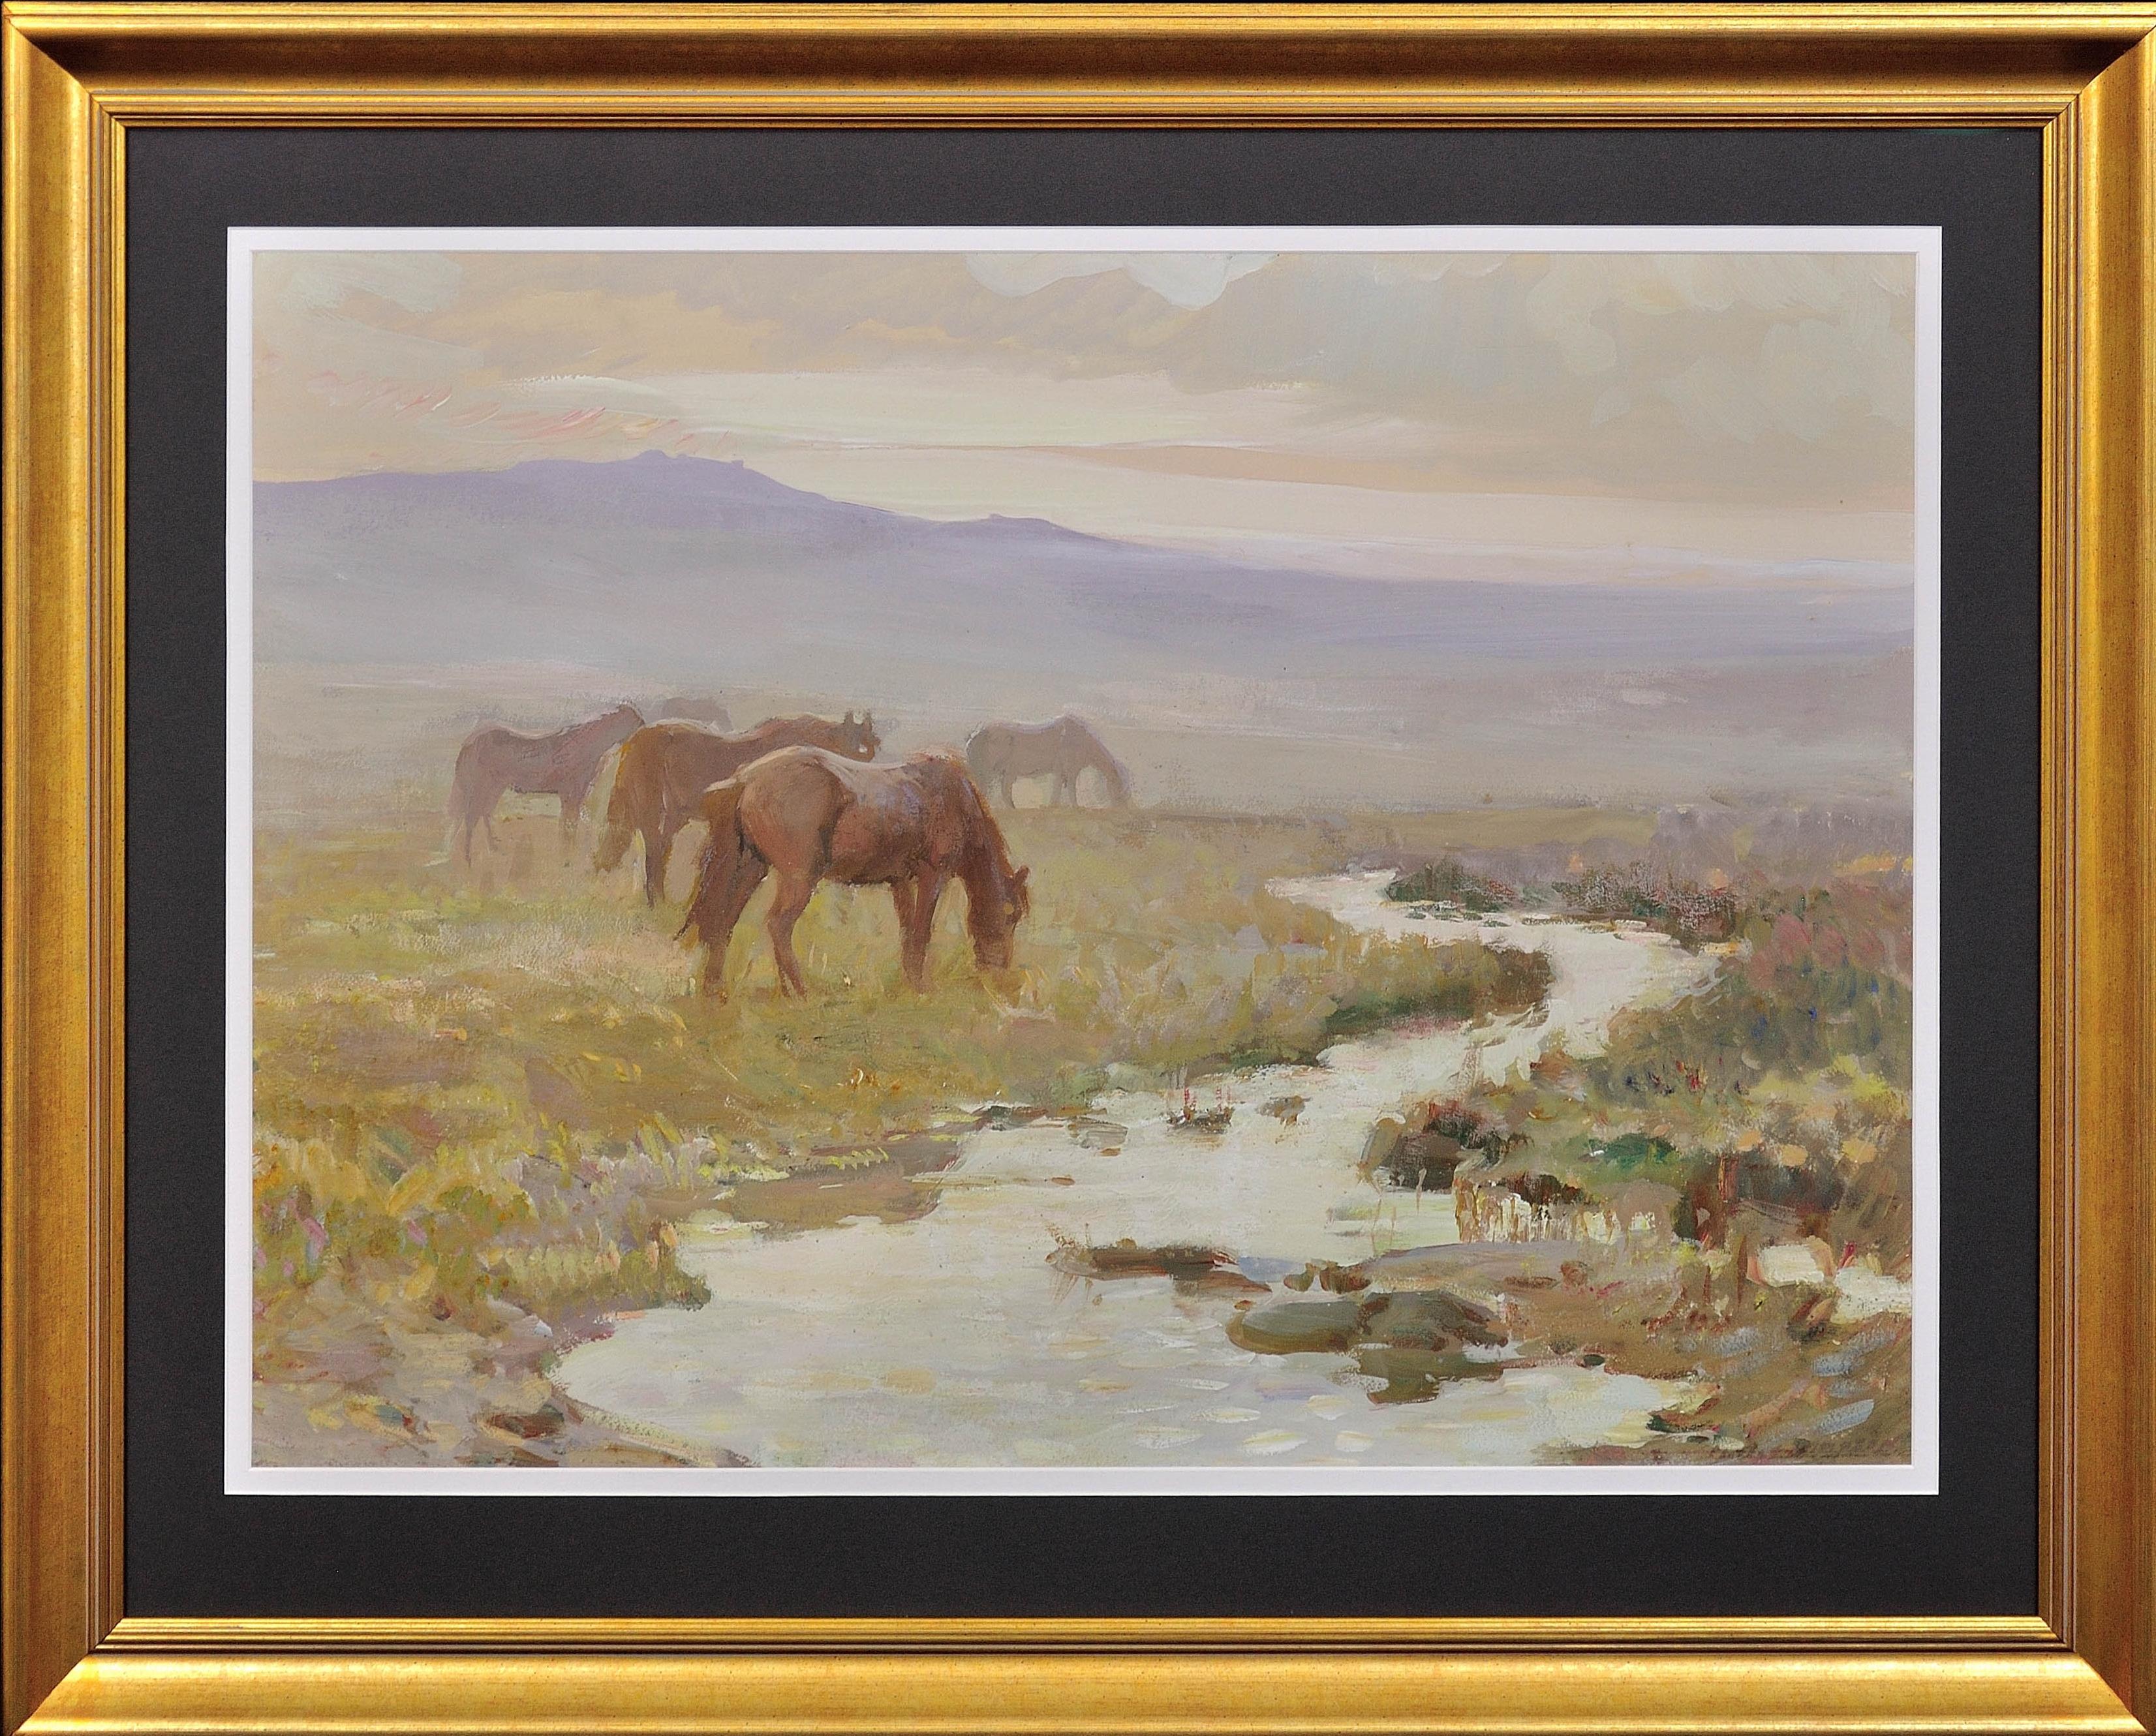 Landscape Painting Charles Walter Simpson - Poneys Dartmoor. Mist and Haze du début du matin. Poney de Devon Moor.1930s. Chevaux sauvages